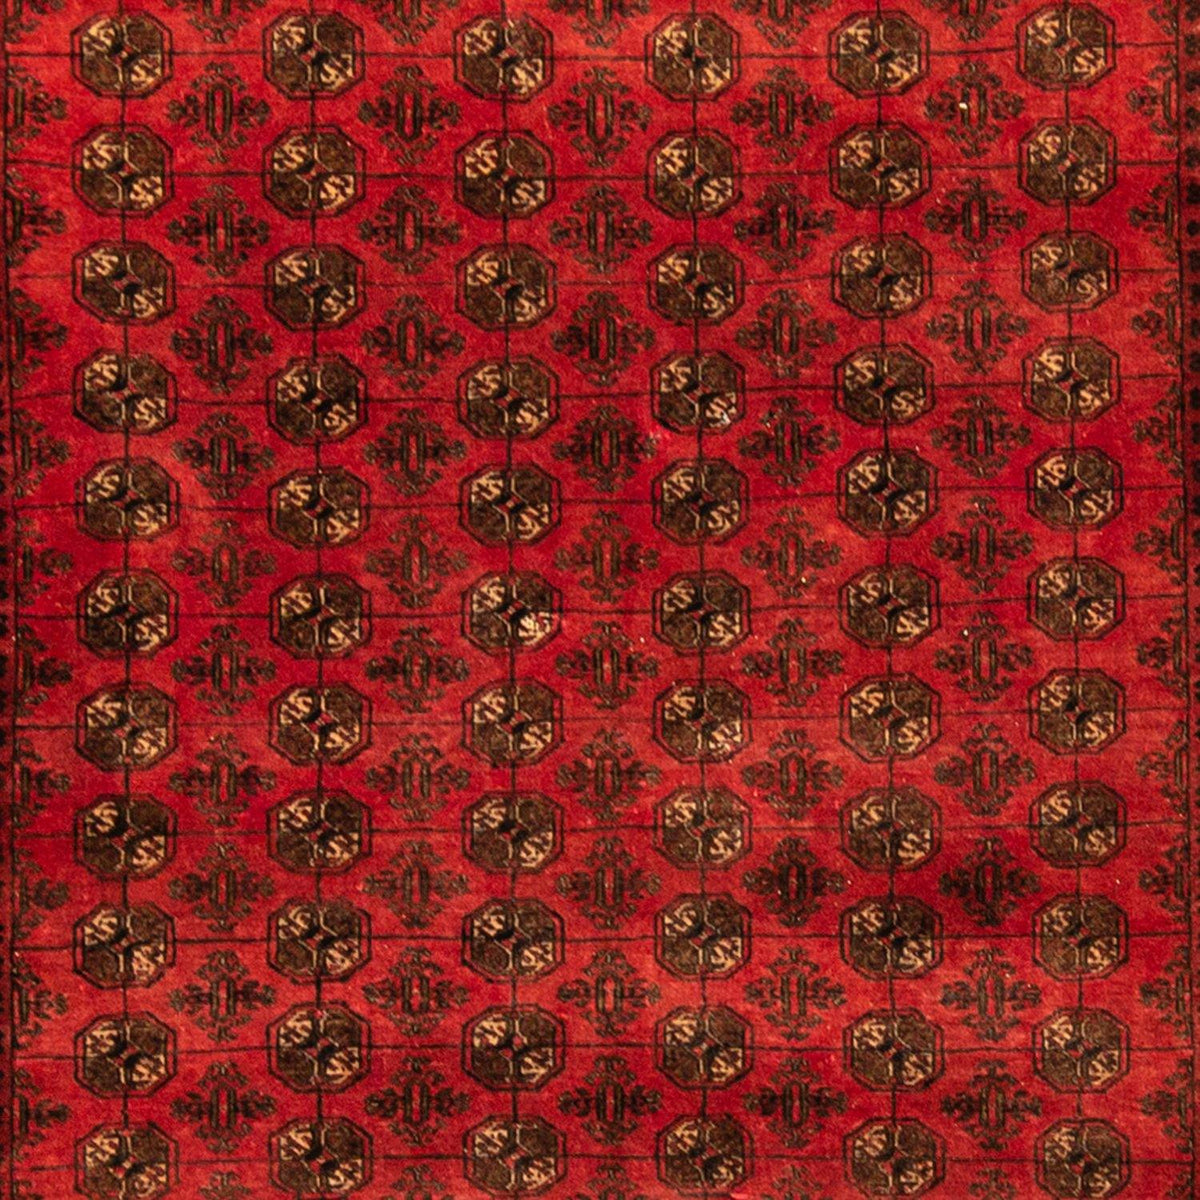 Fine Hand-knotted 100% Wool Vintage Turkmen Rug 192cm x 256cm